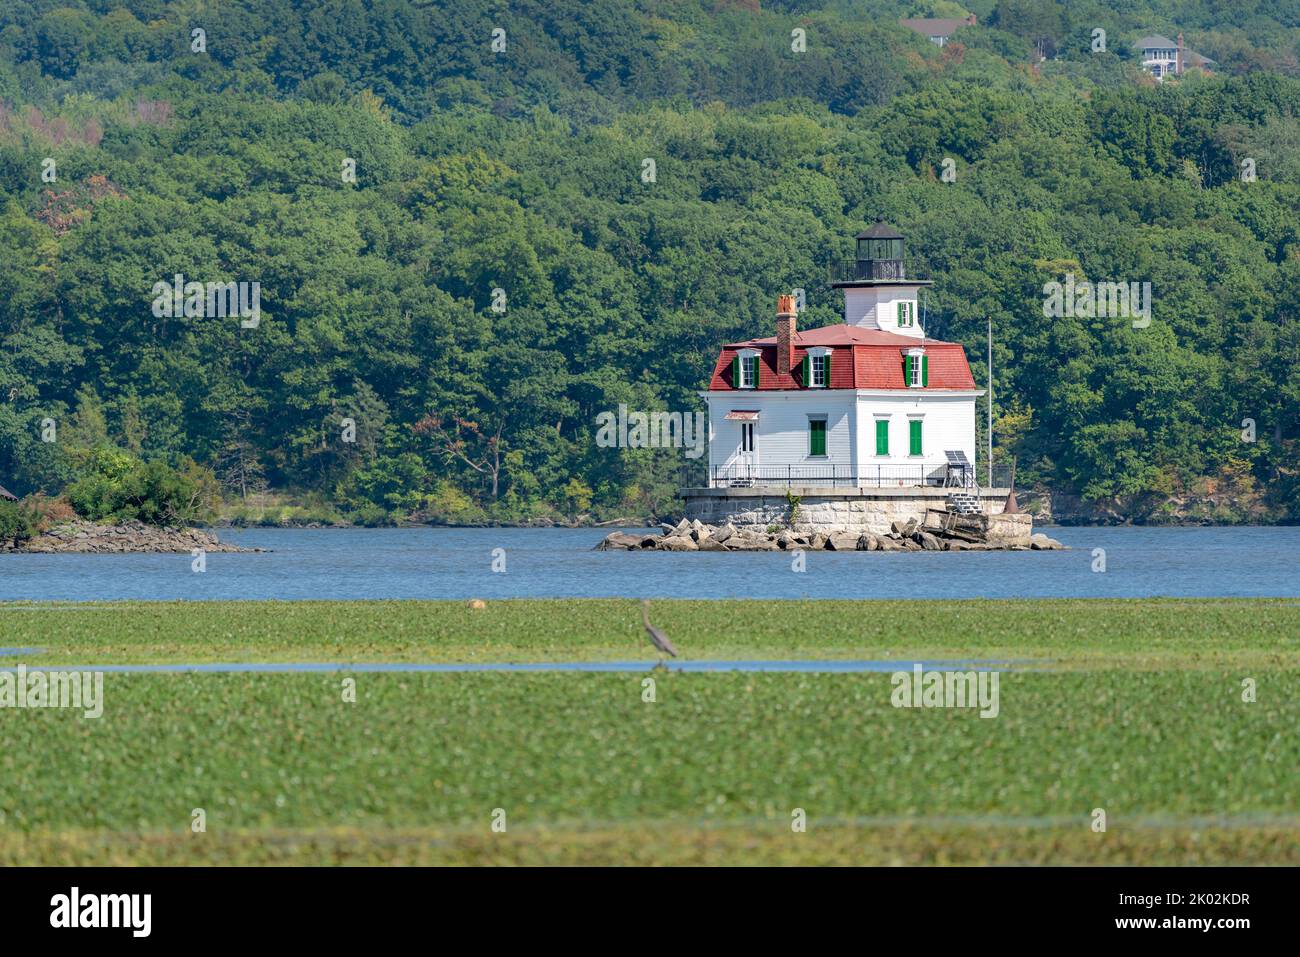 09/08/2022 - ville d'Esopus, NY, photo du phare historique d'Esopus Meadows situé sur la rivière Hudson. Photo de Lighthouse Park. Banque D'Images